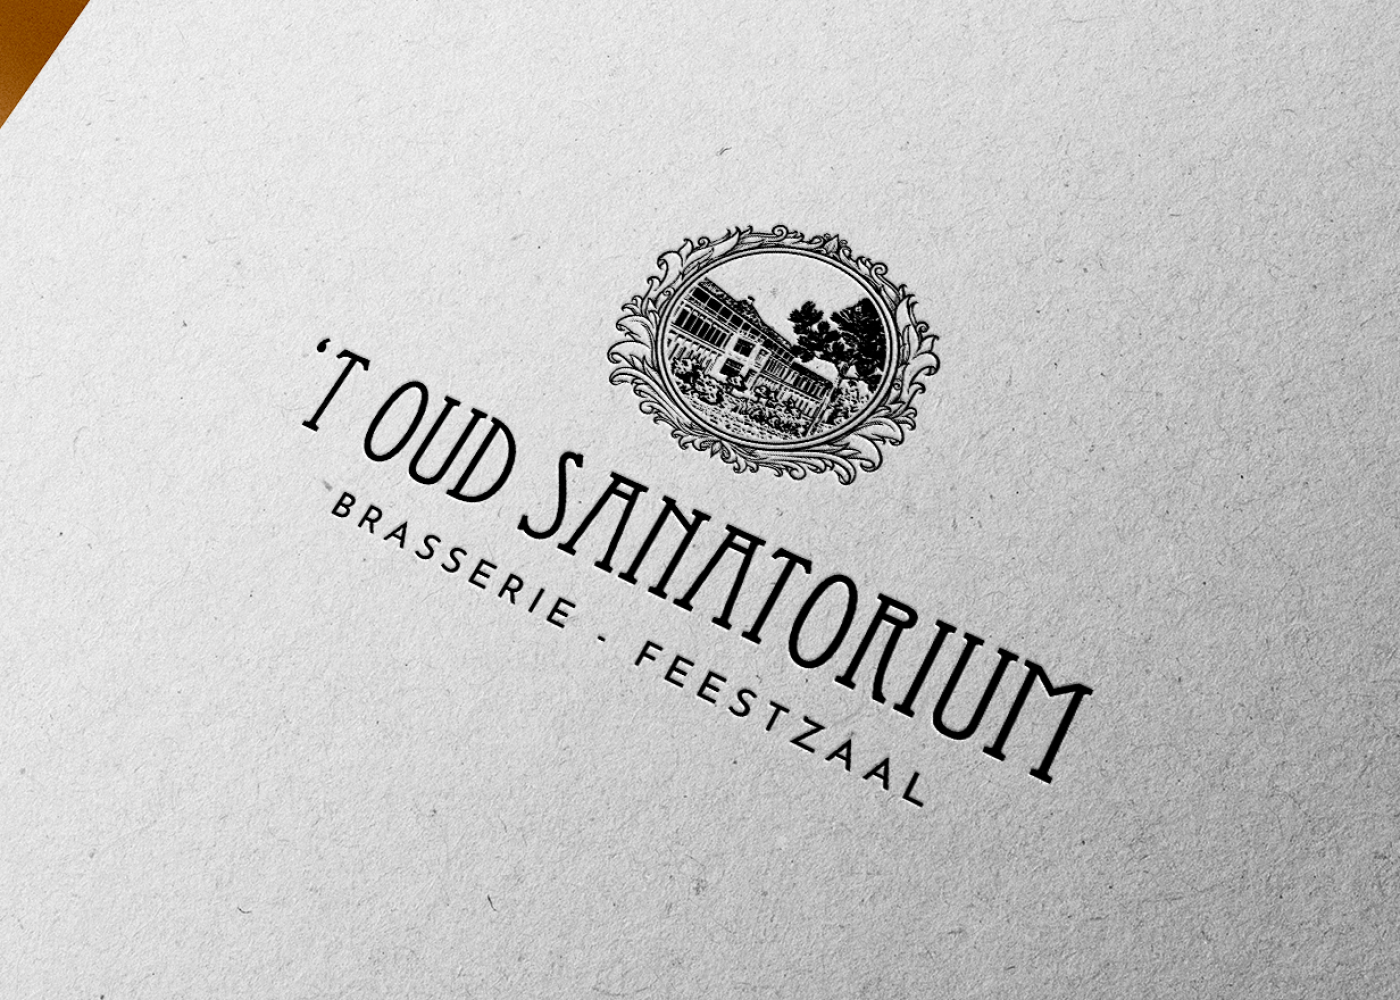 Een mockup van het logo en huisstijl ontwerp van 't Oud Sanatorium